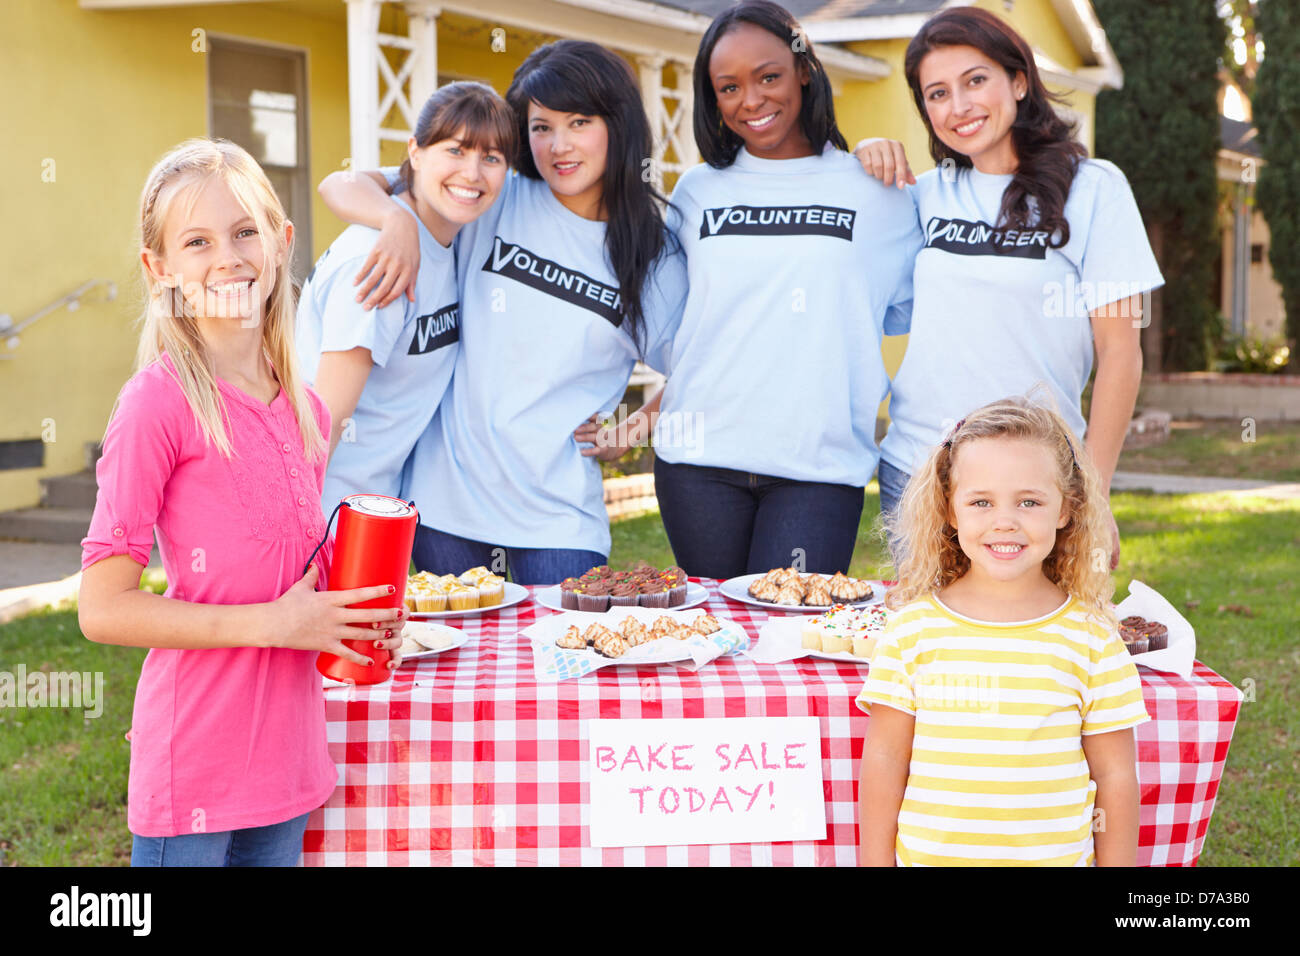 Women And Children Running Charity Bake Sale Stock Photo